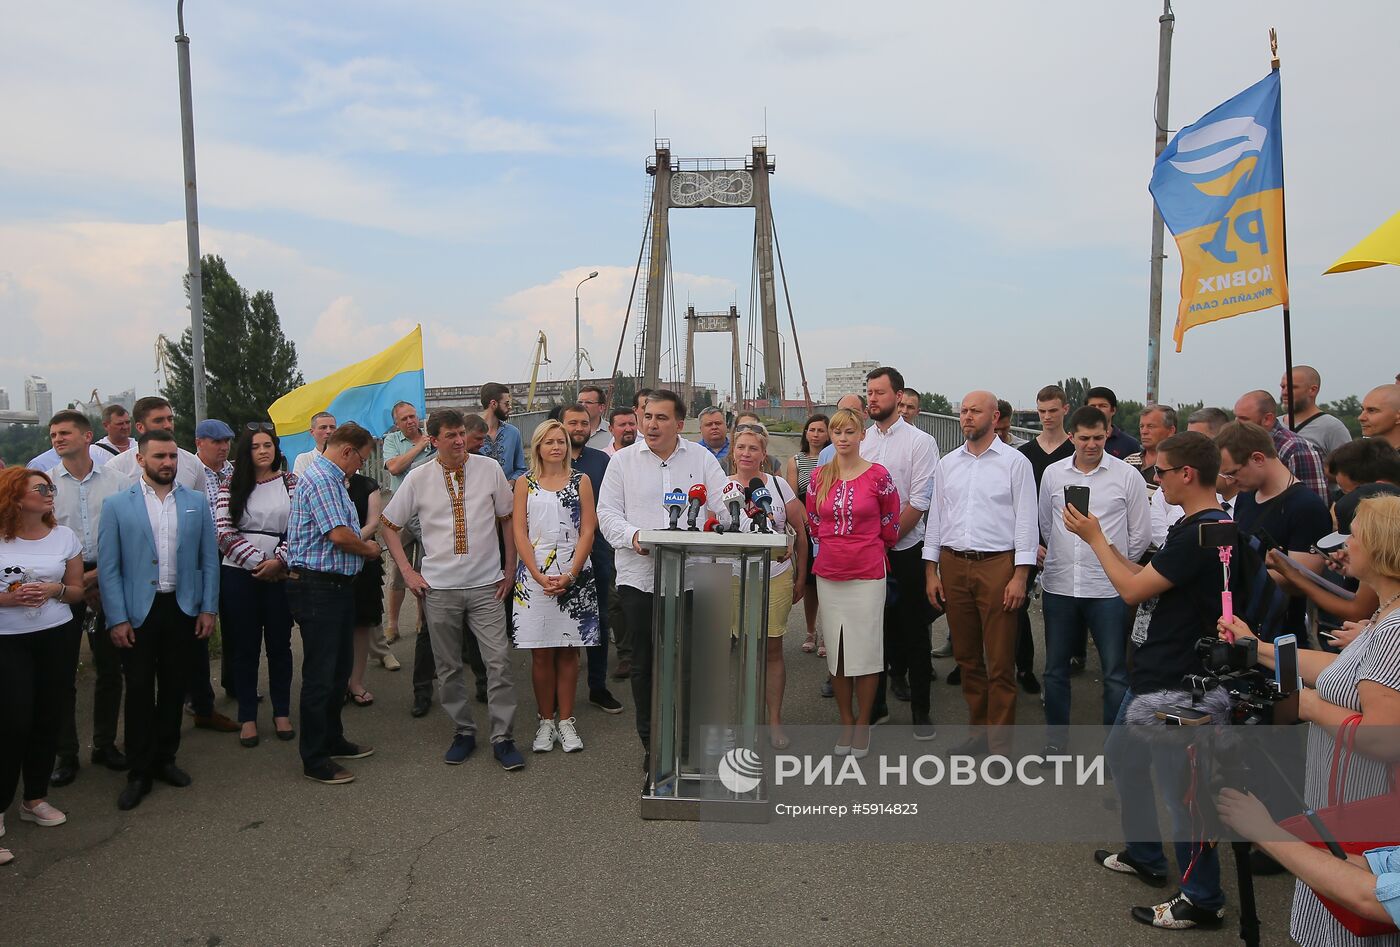 Пресс-конференция партии "Движение новых сил" в Киеве